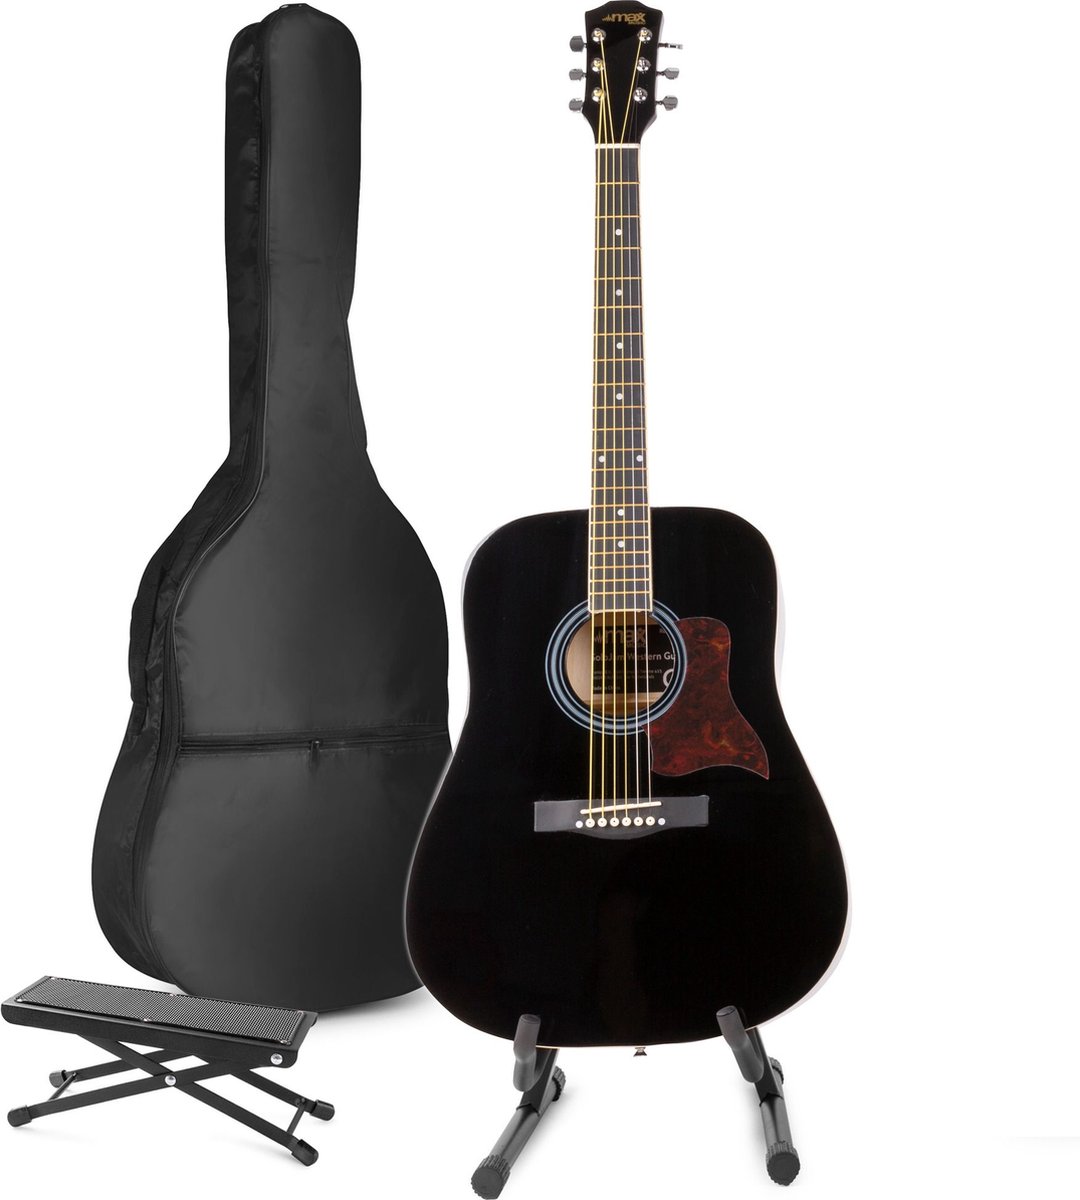 Akoestische gitaar voor beginners - MAX SoloJam Western gitaar - Incl. gitaar standaard, voetsteun, gitaar stemapparaat, gitaartas en 2x plectrum - Zwart